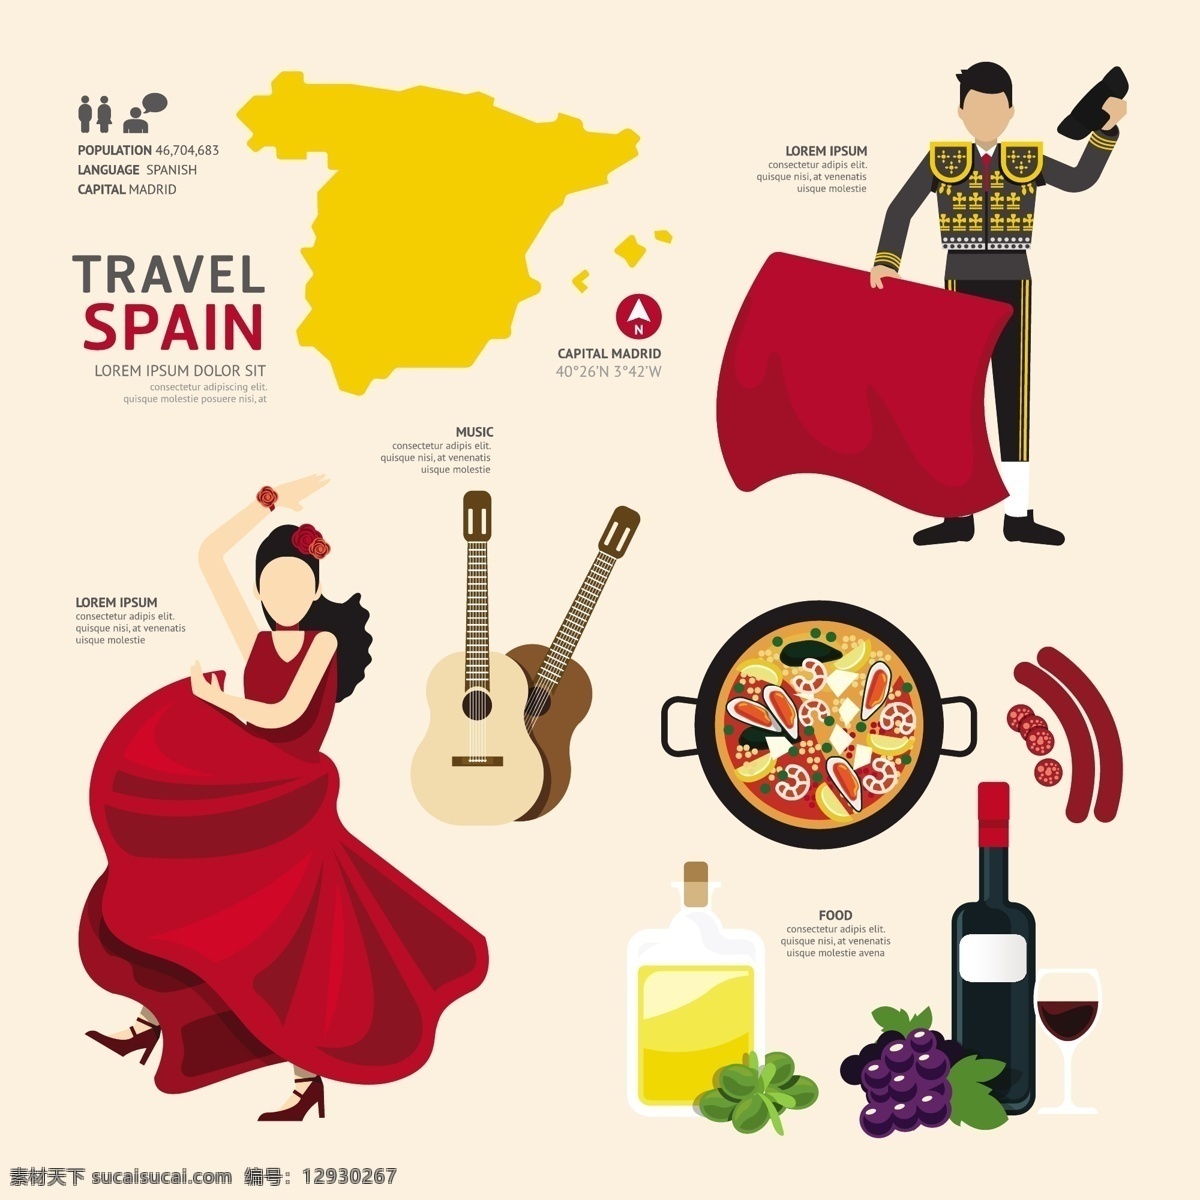 西班牙 文化 元素 西班牙文化 矢量素材 民族特色 扁平化图标 西班牙旅游 旅行 旅游景点 著名景点 旅游图标 斗牛士 吉他 葡萄酒 eps格式 卡通设计 白色